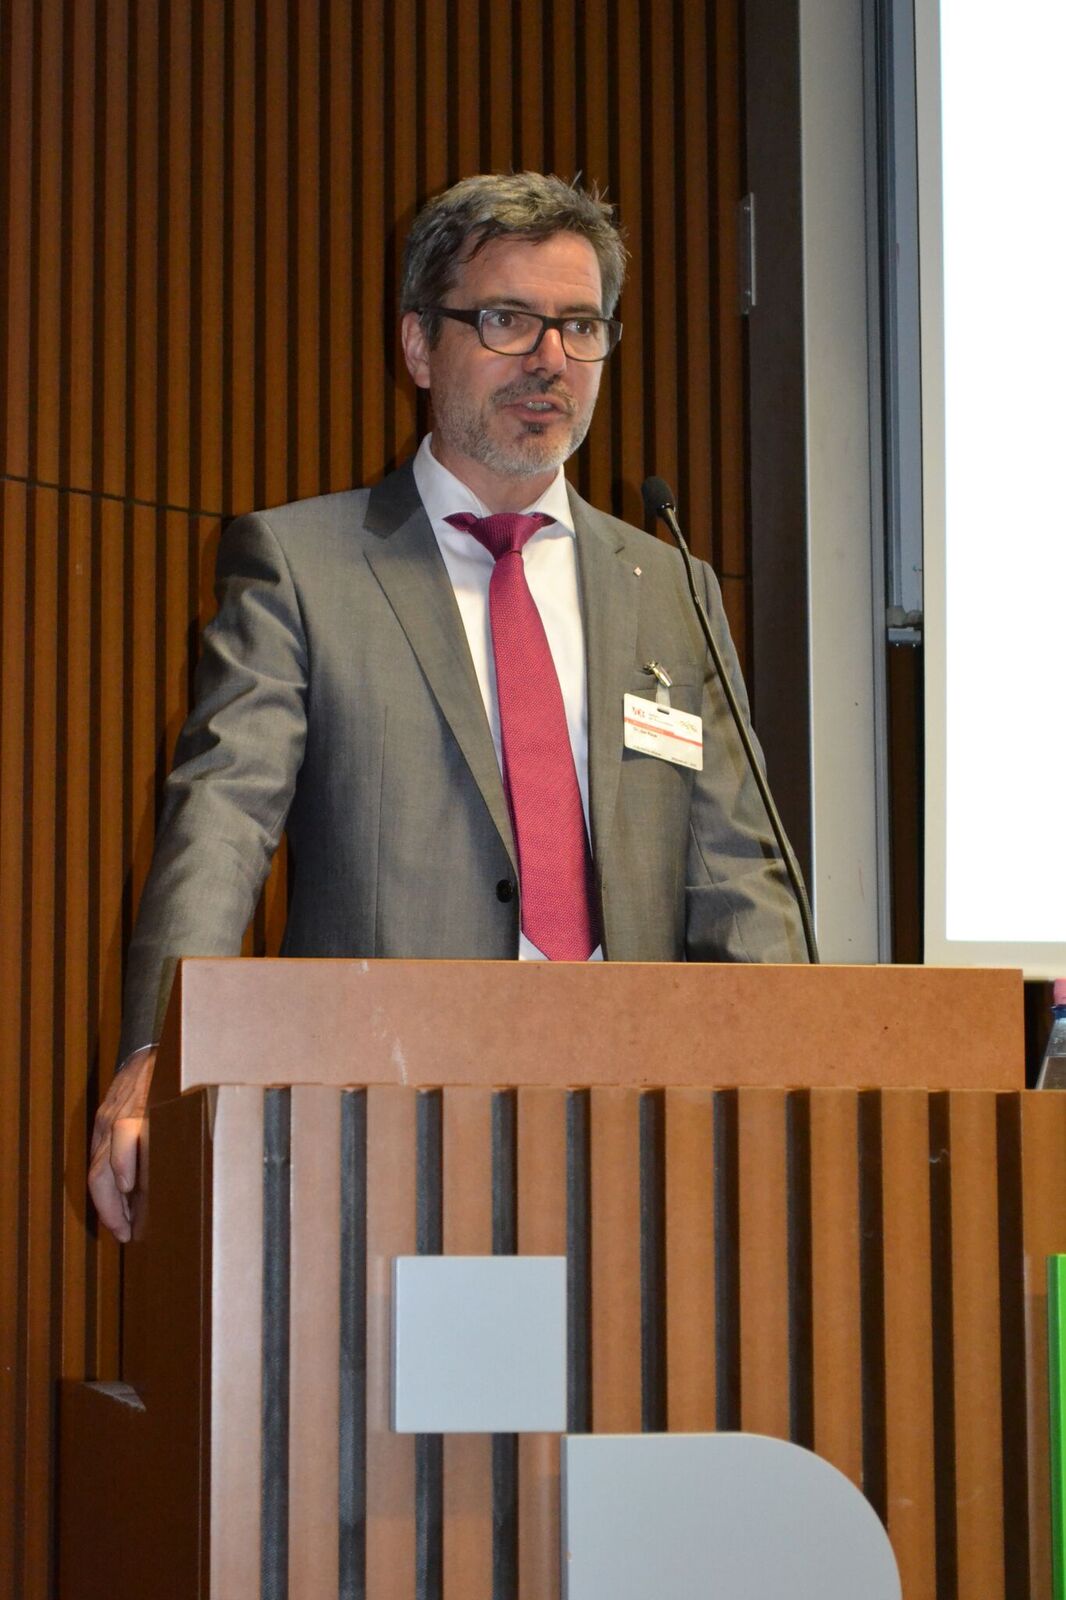 VDR-Präsident Dr. Jan Raue während seiner Rede auf der ersten Tagung des neuen Formats FORWARD im Juni 2017.